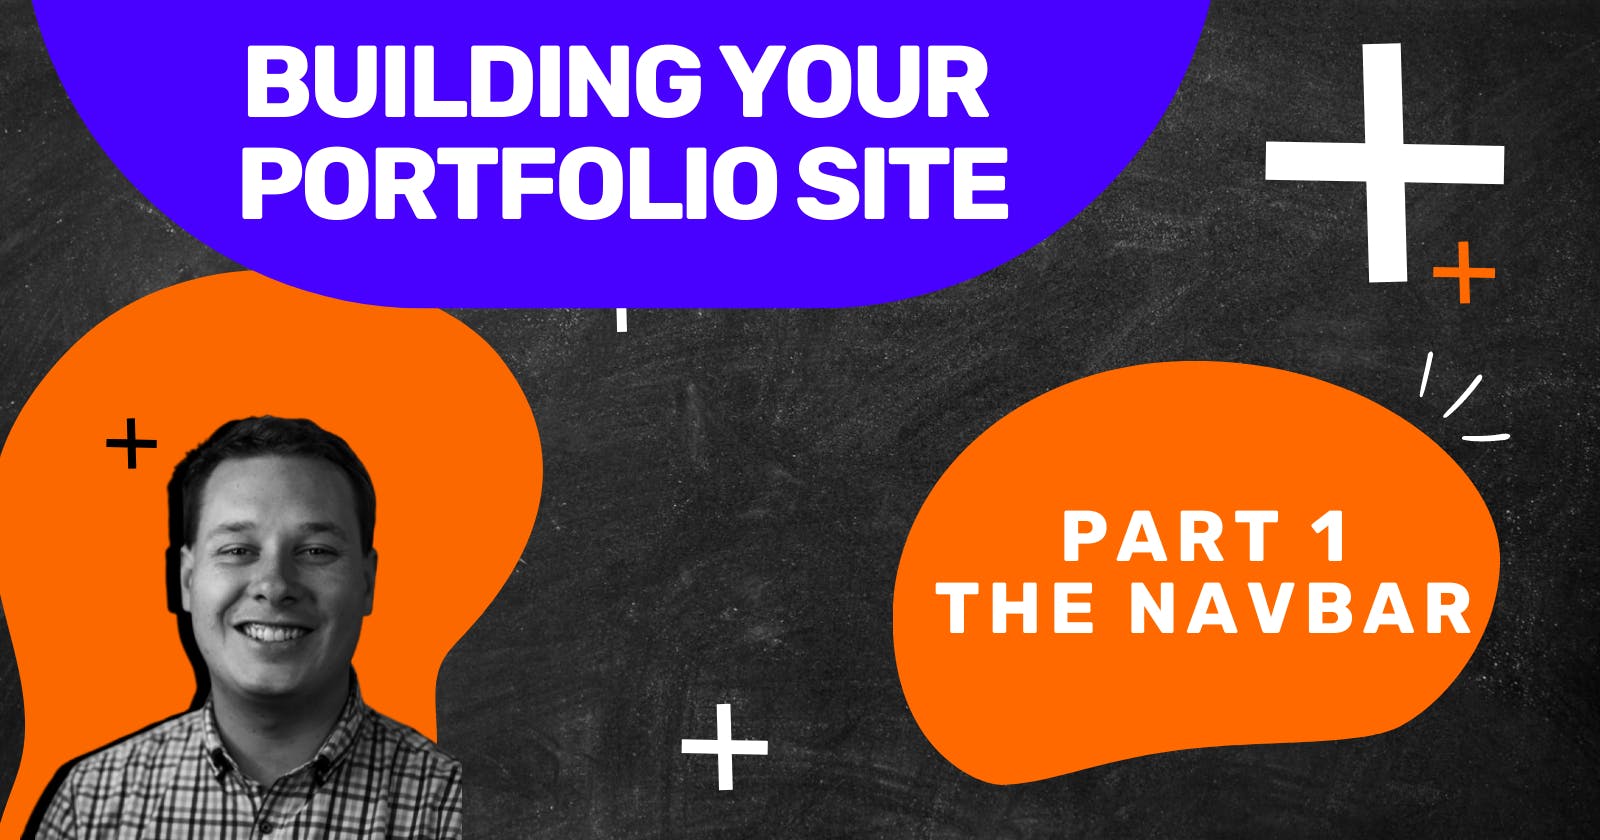 Building an awesome portfolio site - The Navbar!